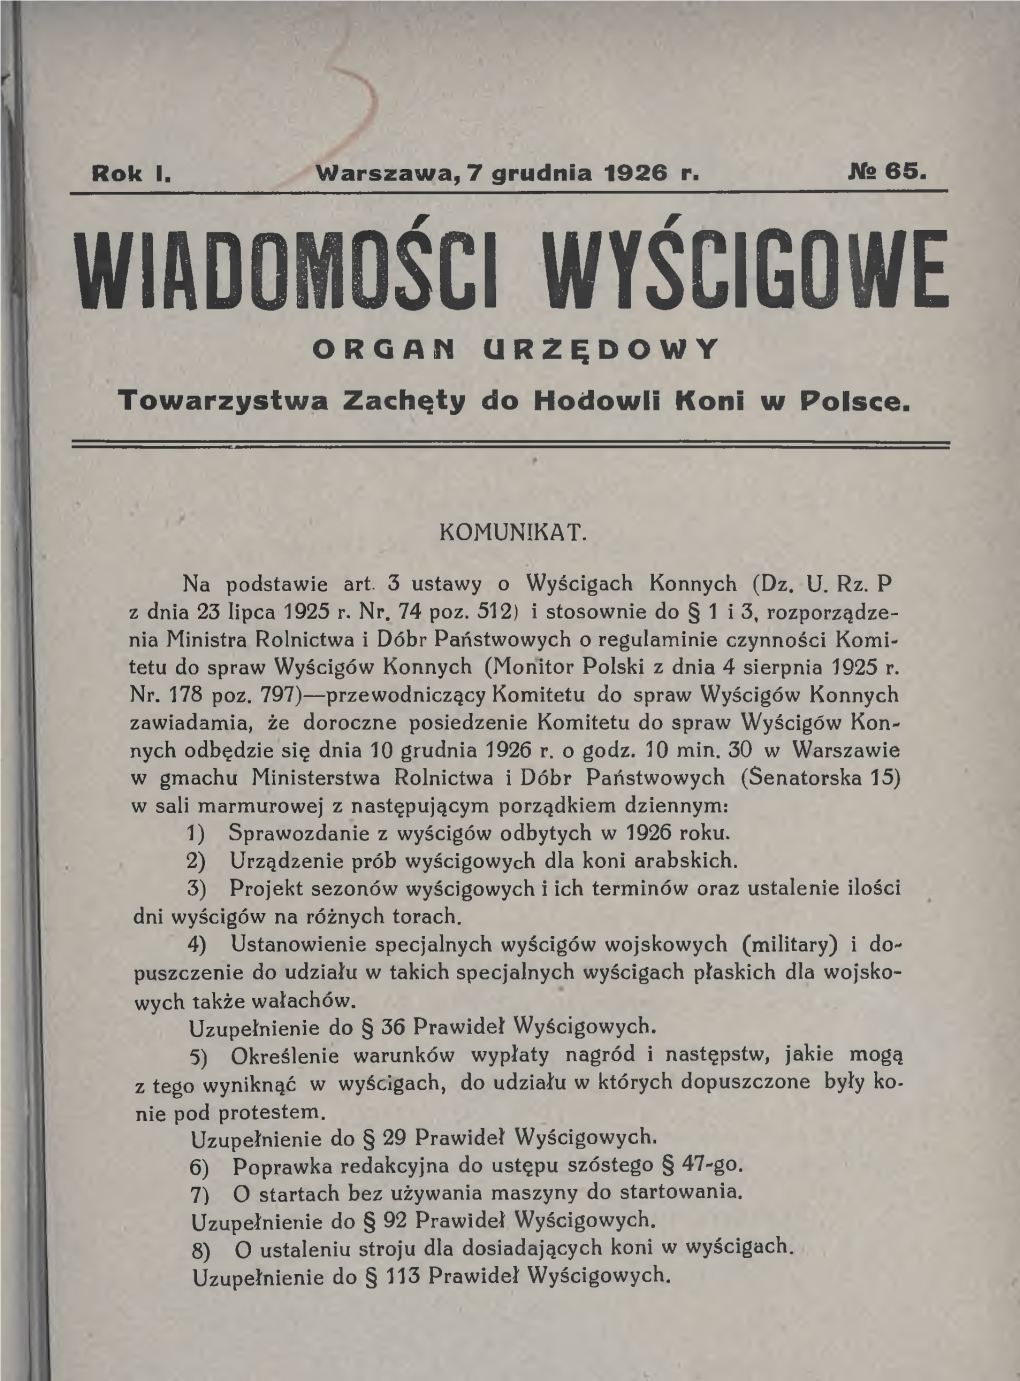 WIADOMOŚCI WYŚCIGOWE ORGAN URZĘDOWY Towarzystwa Zachęty Do Hodowli Koni W Polsce